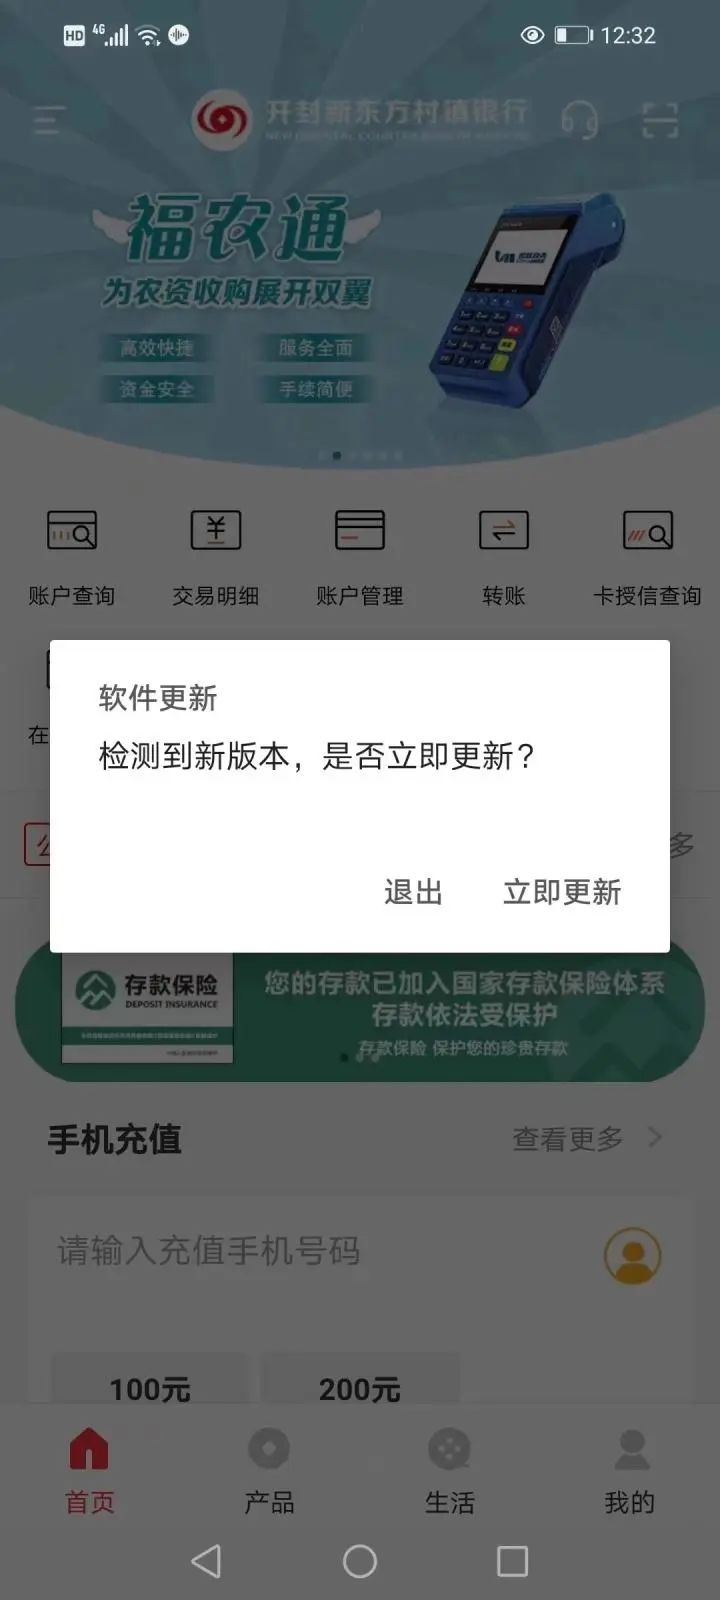 乐动体育app在线网址:即将开启垫付河南村镇银行案五大疑问仍待解